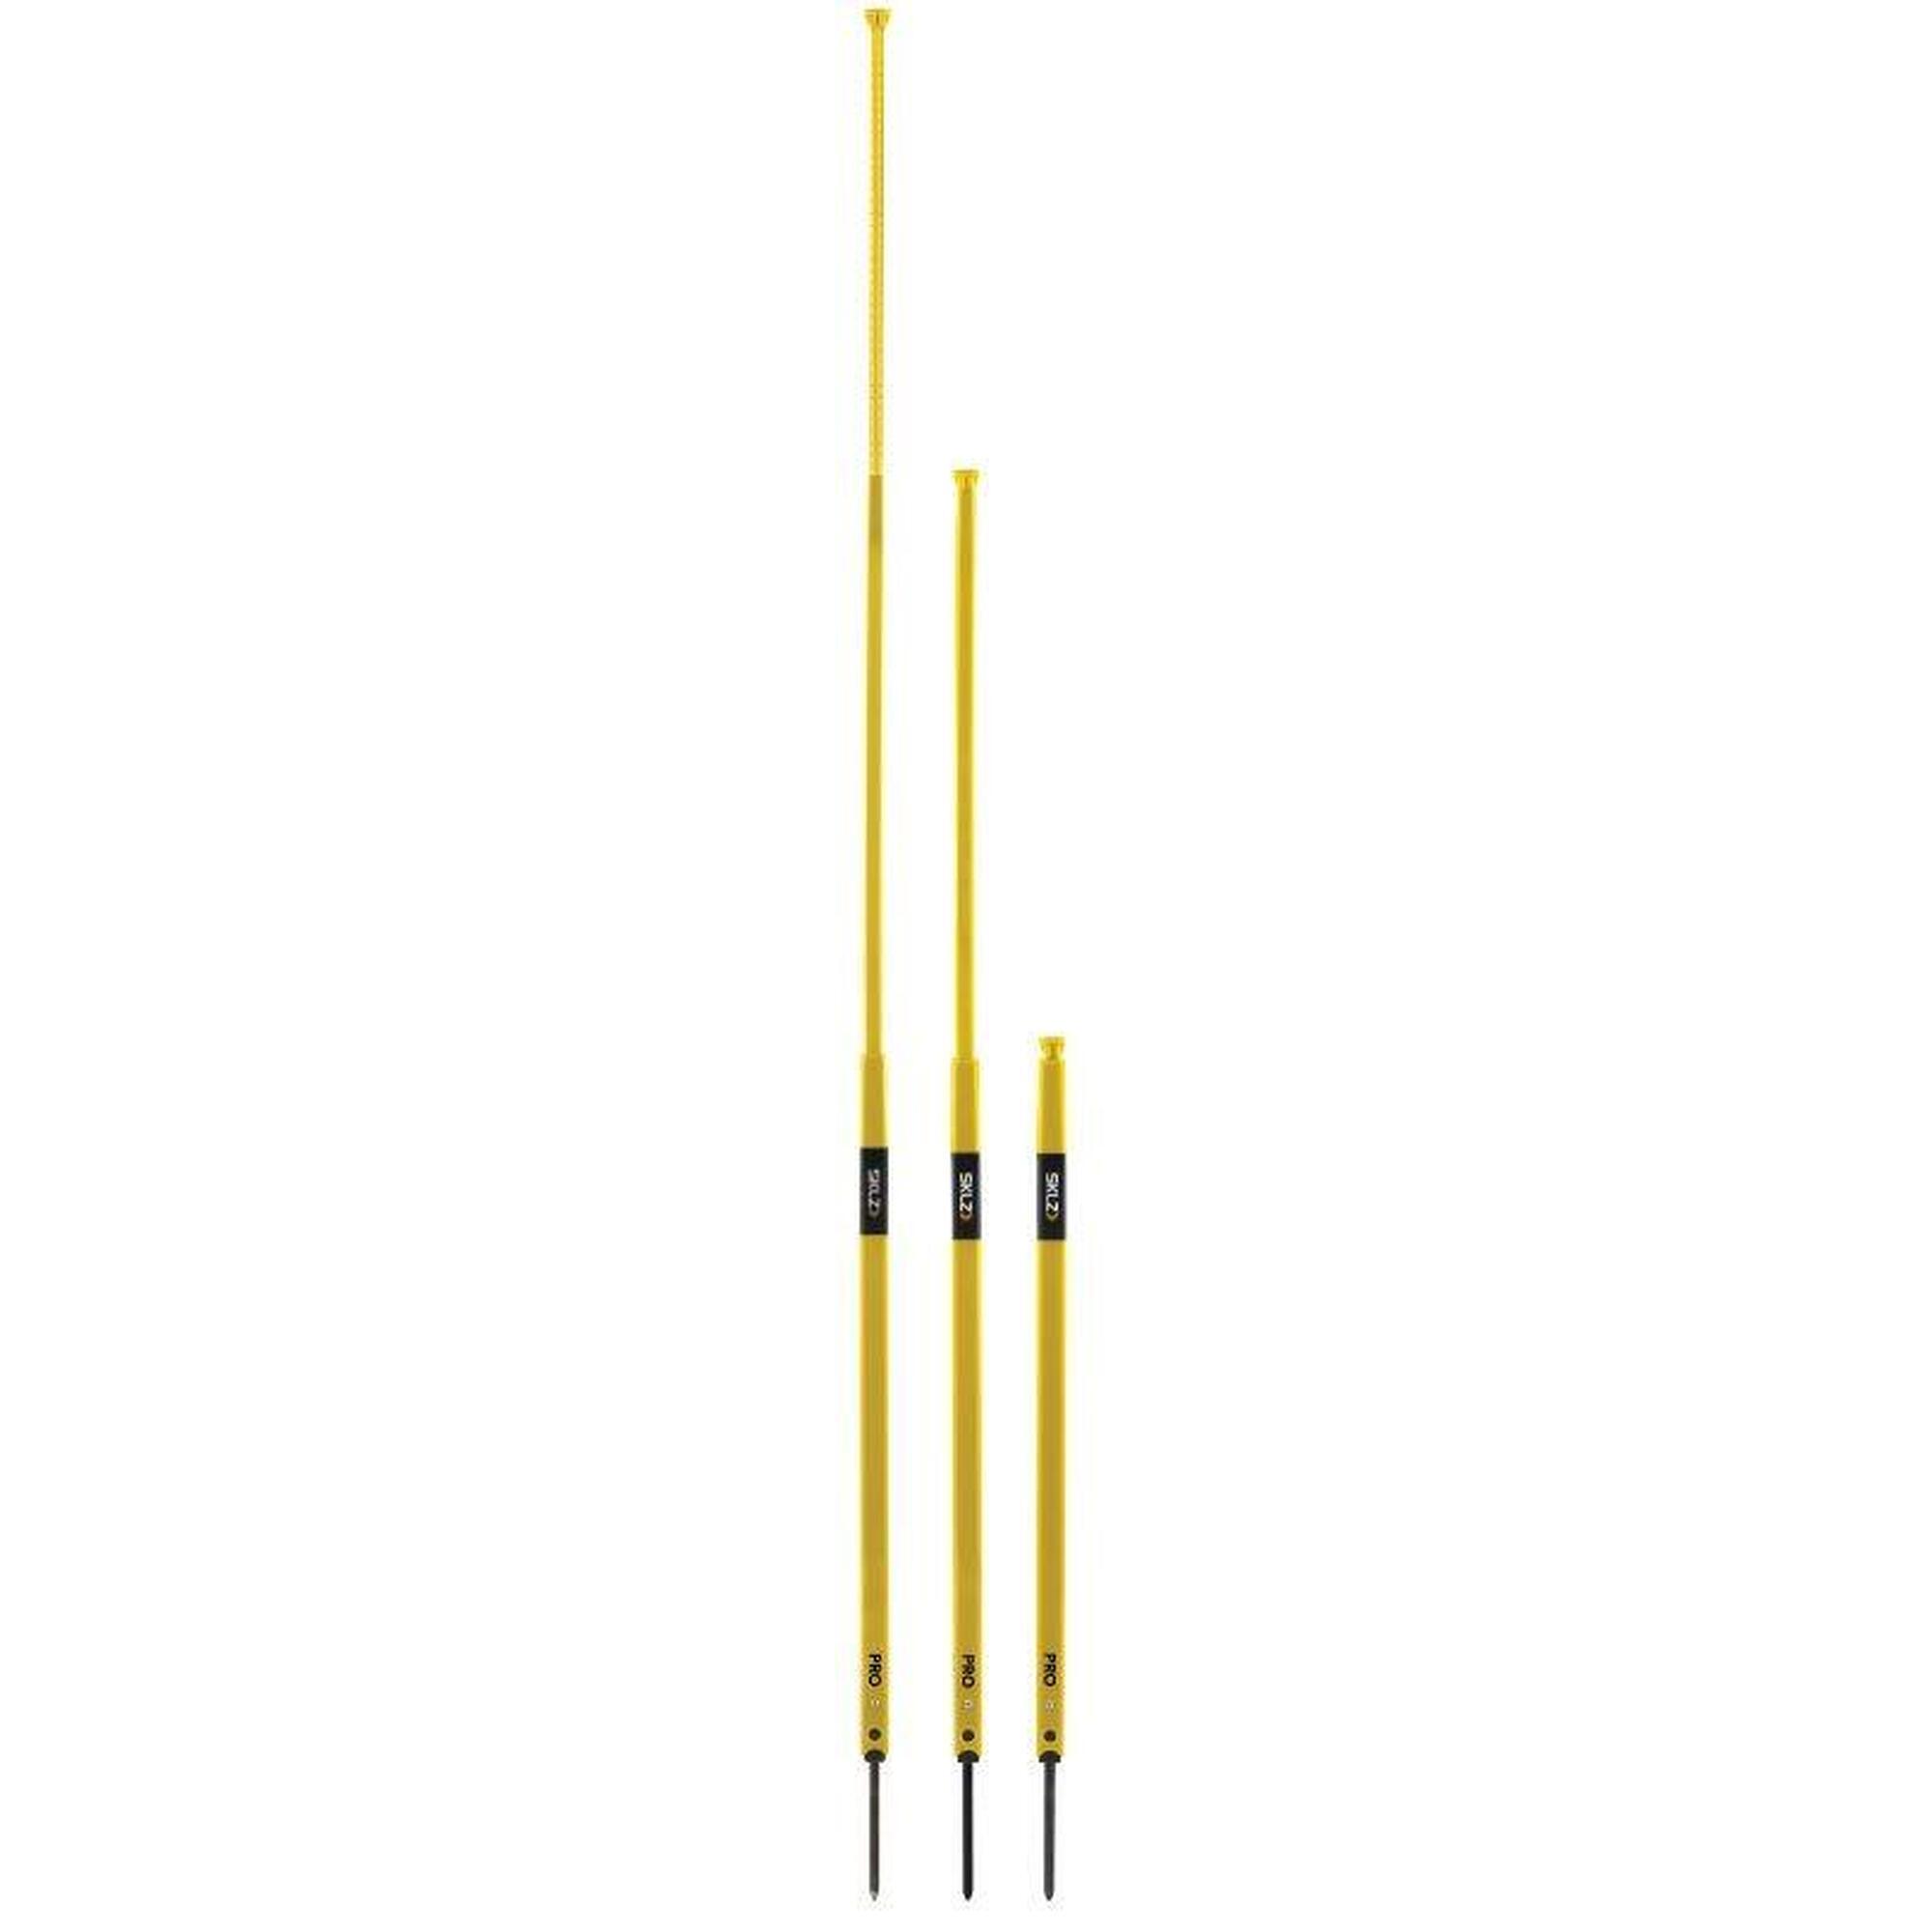 Juego de 8 bastones de eslalon, conos - SKLZ Pro Training Agility Poles